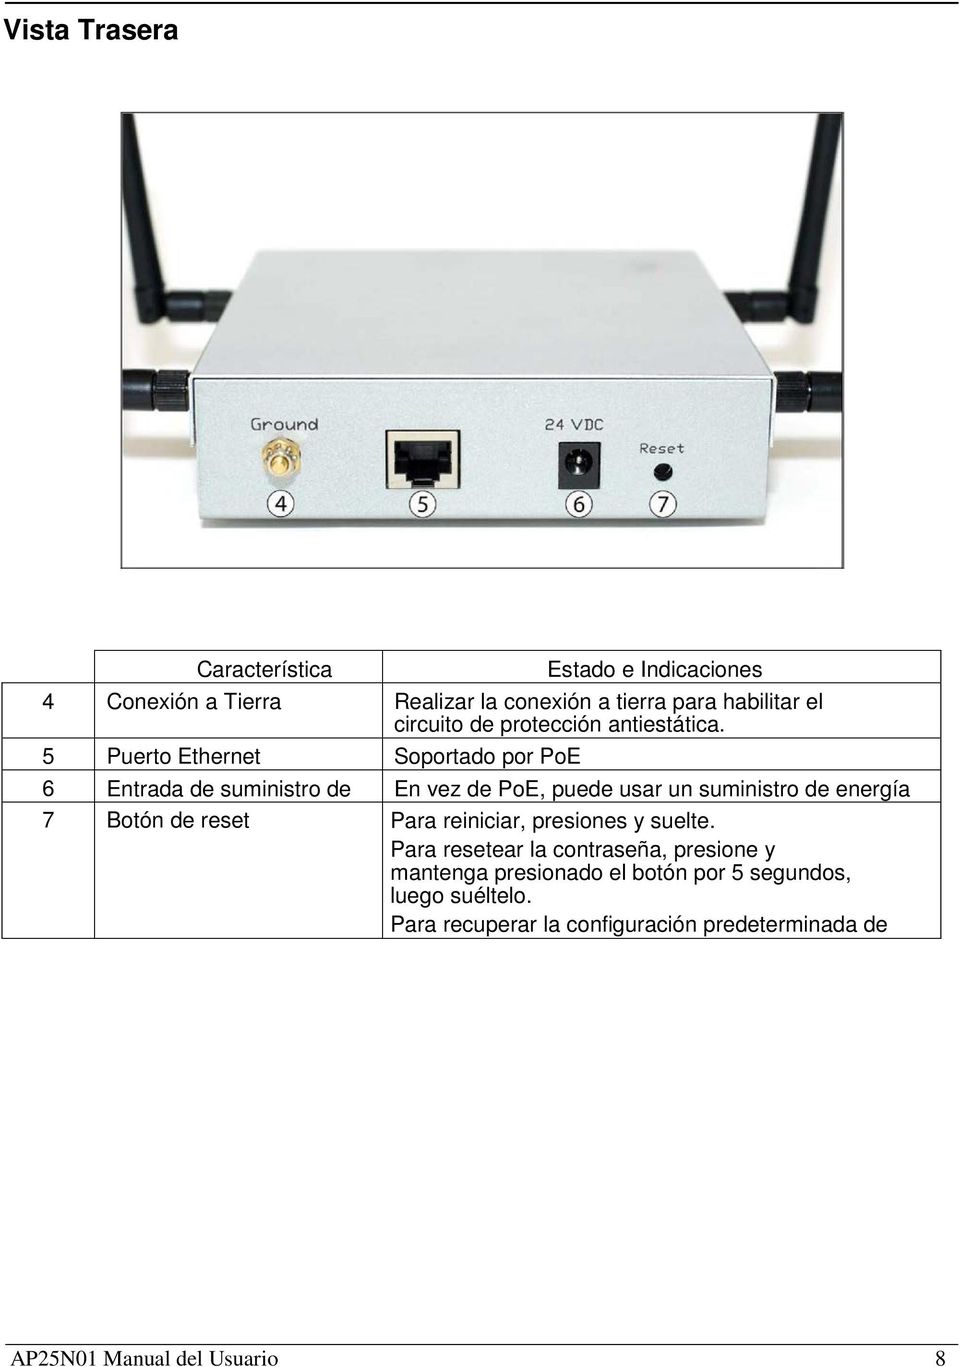 5 Puerto Ethernet Soportado por PoE 6 Entrada de suministro de En vez de PoE, puede usar un suministro de energía 7 Botón de